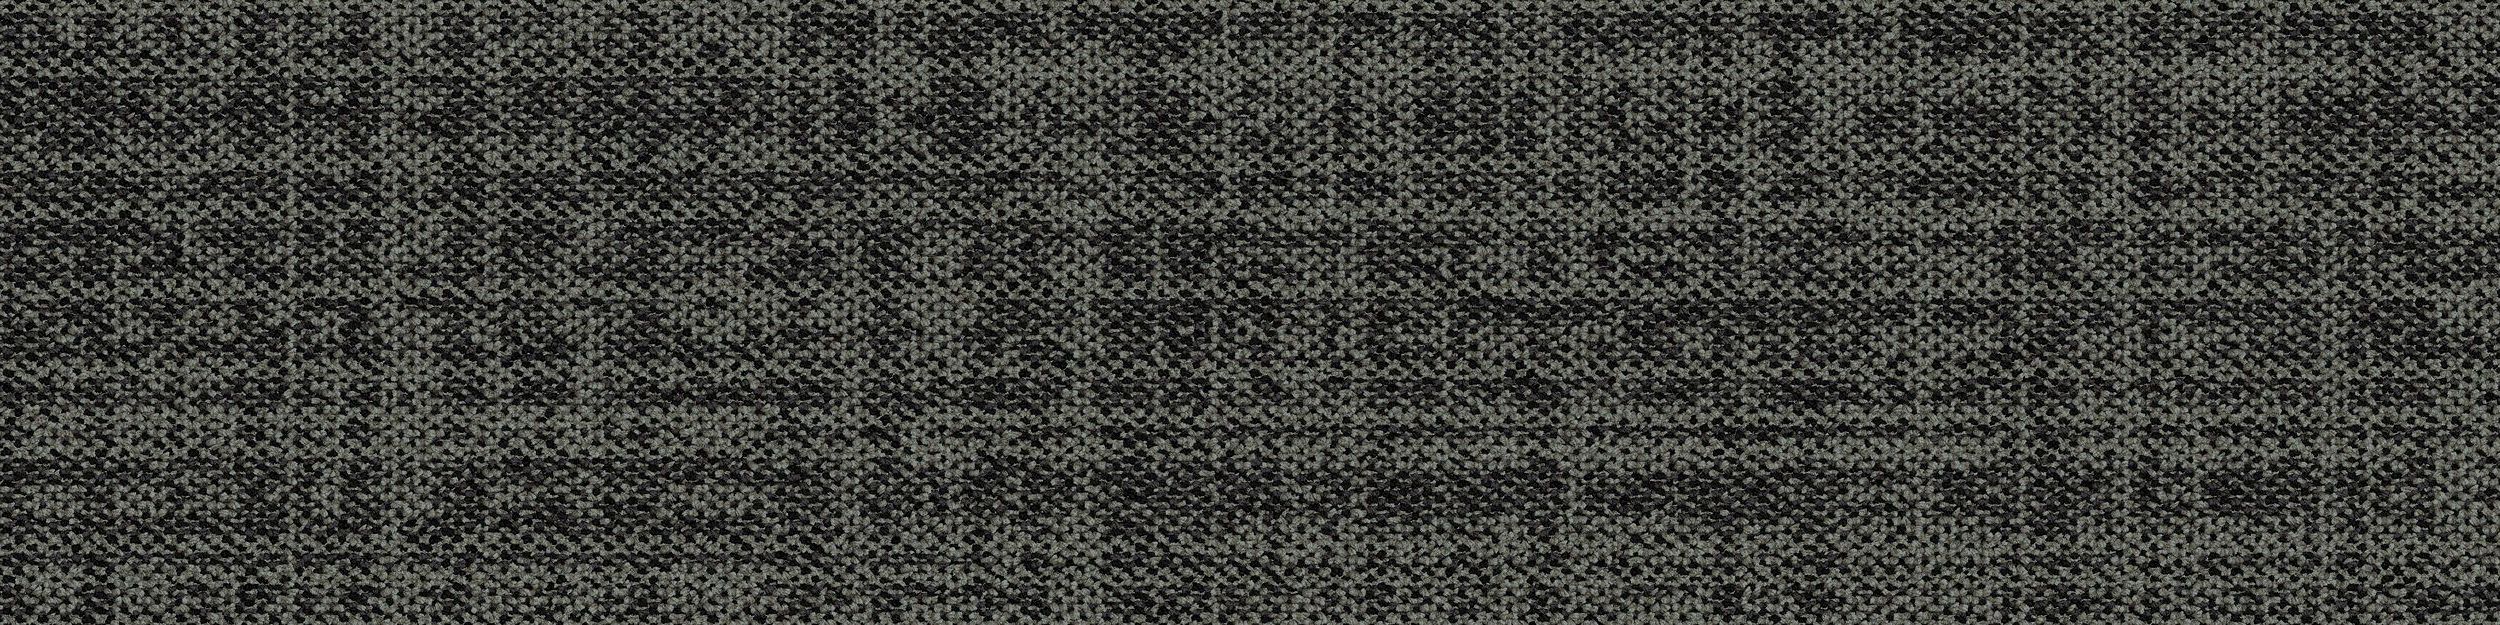 Source Material Carpet Tile In Iron numéro d’image 2